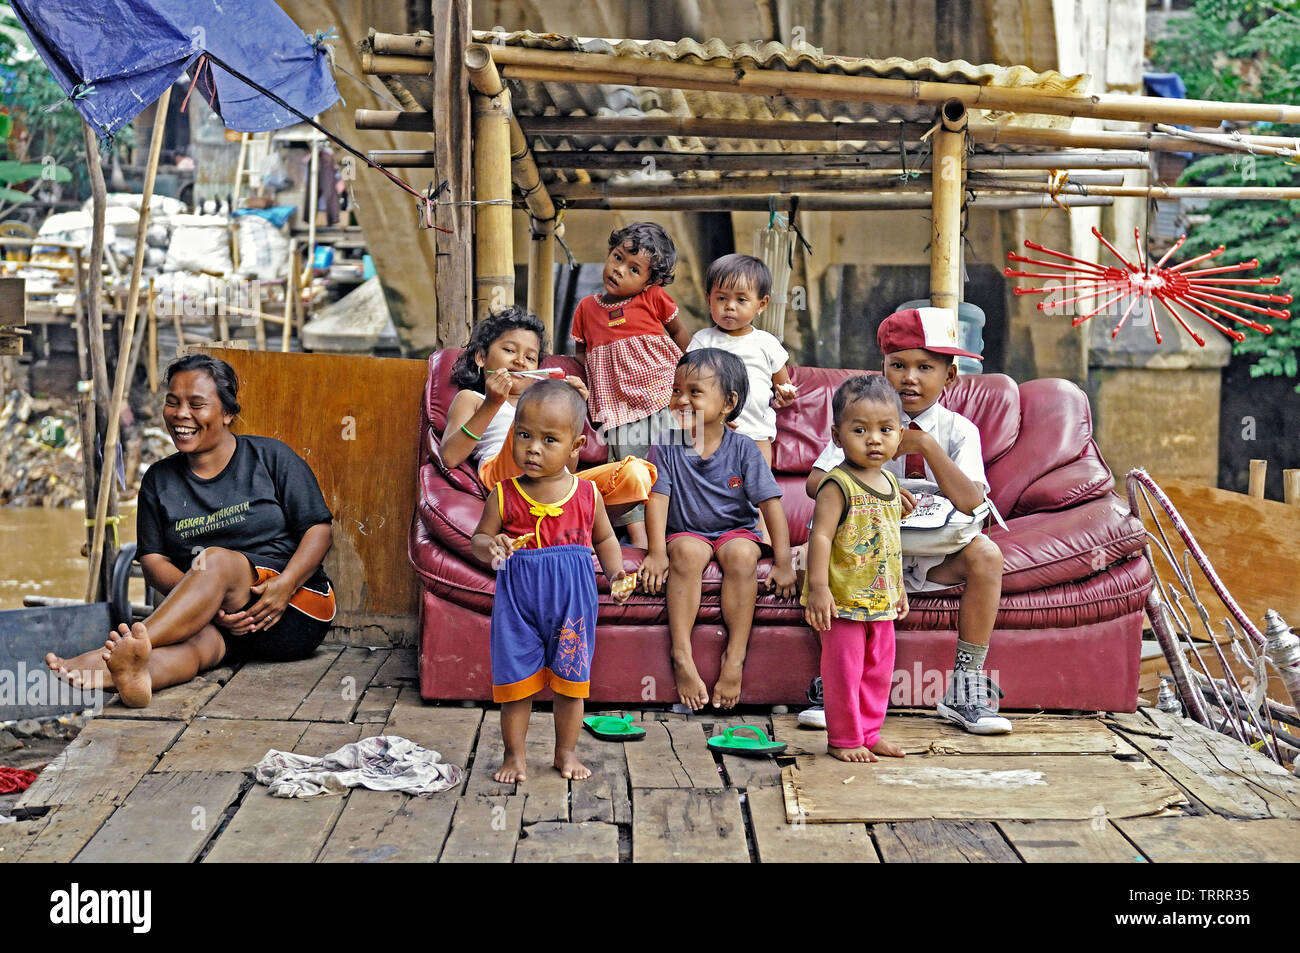 Jakarta, dki jakarta/INDONESIA - Novembre 16, 2009: poveri squatter persone godersi la vita su un lettino in kampung melayu presso le rive del fiume ciliwung Foto Stock